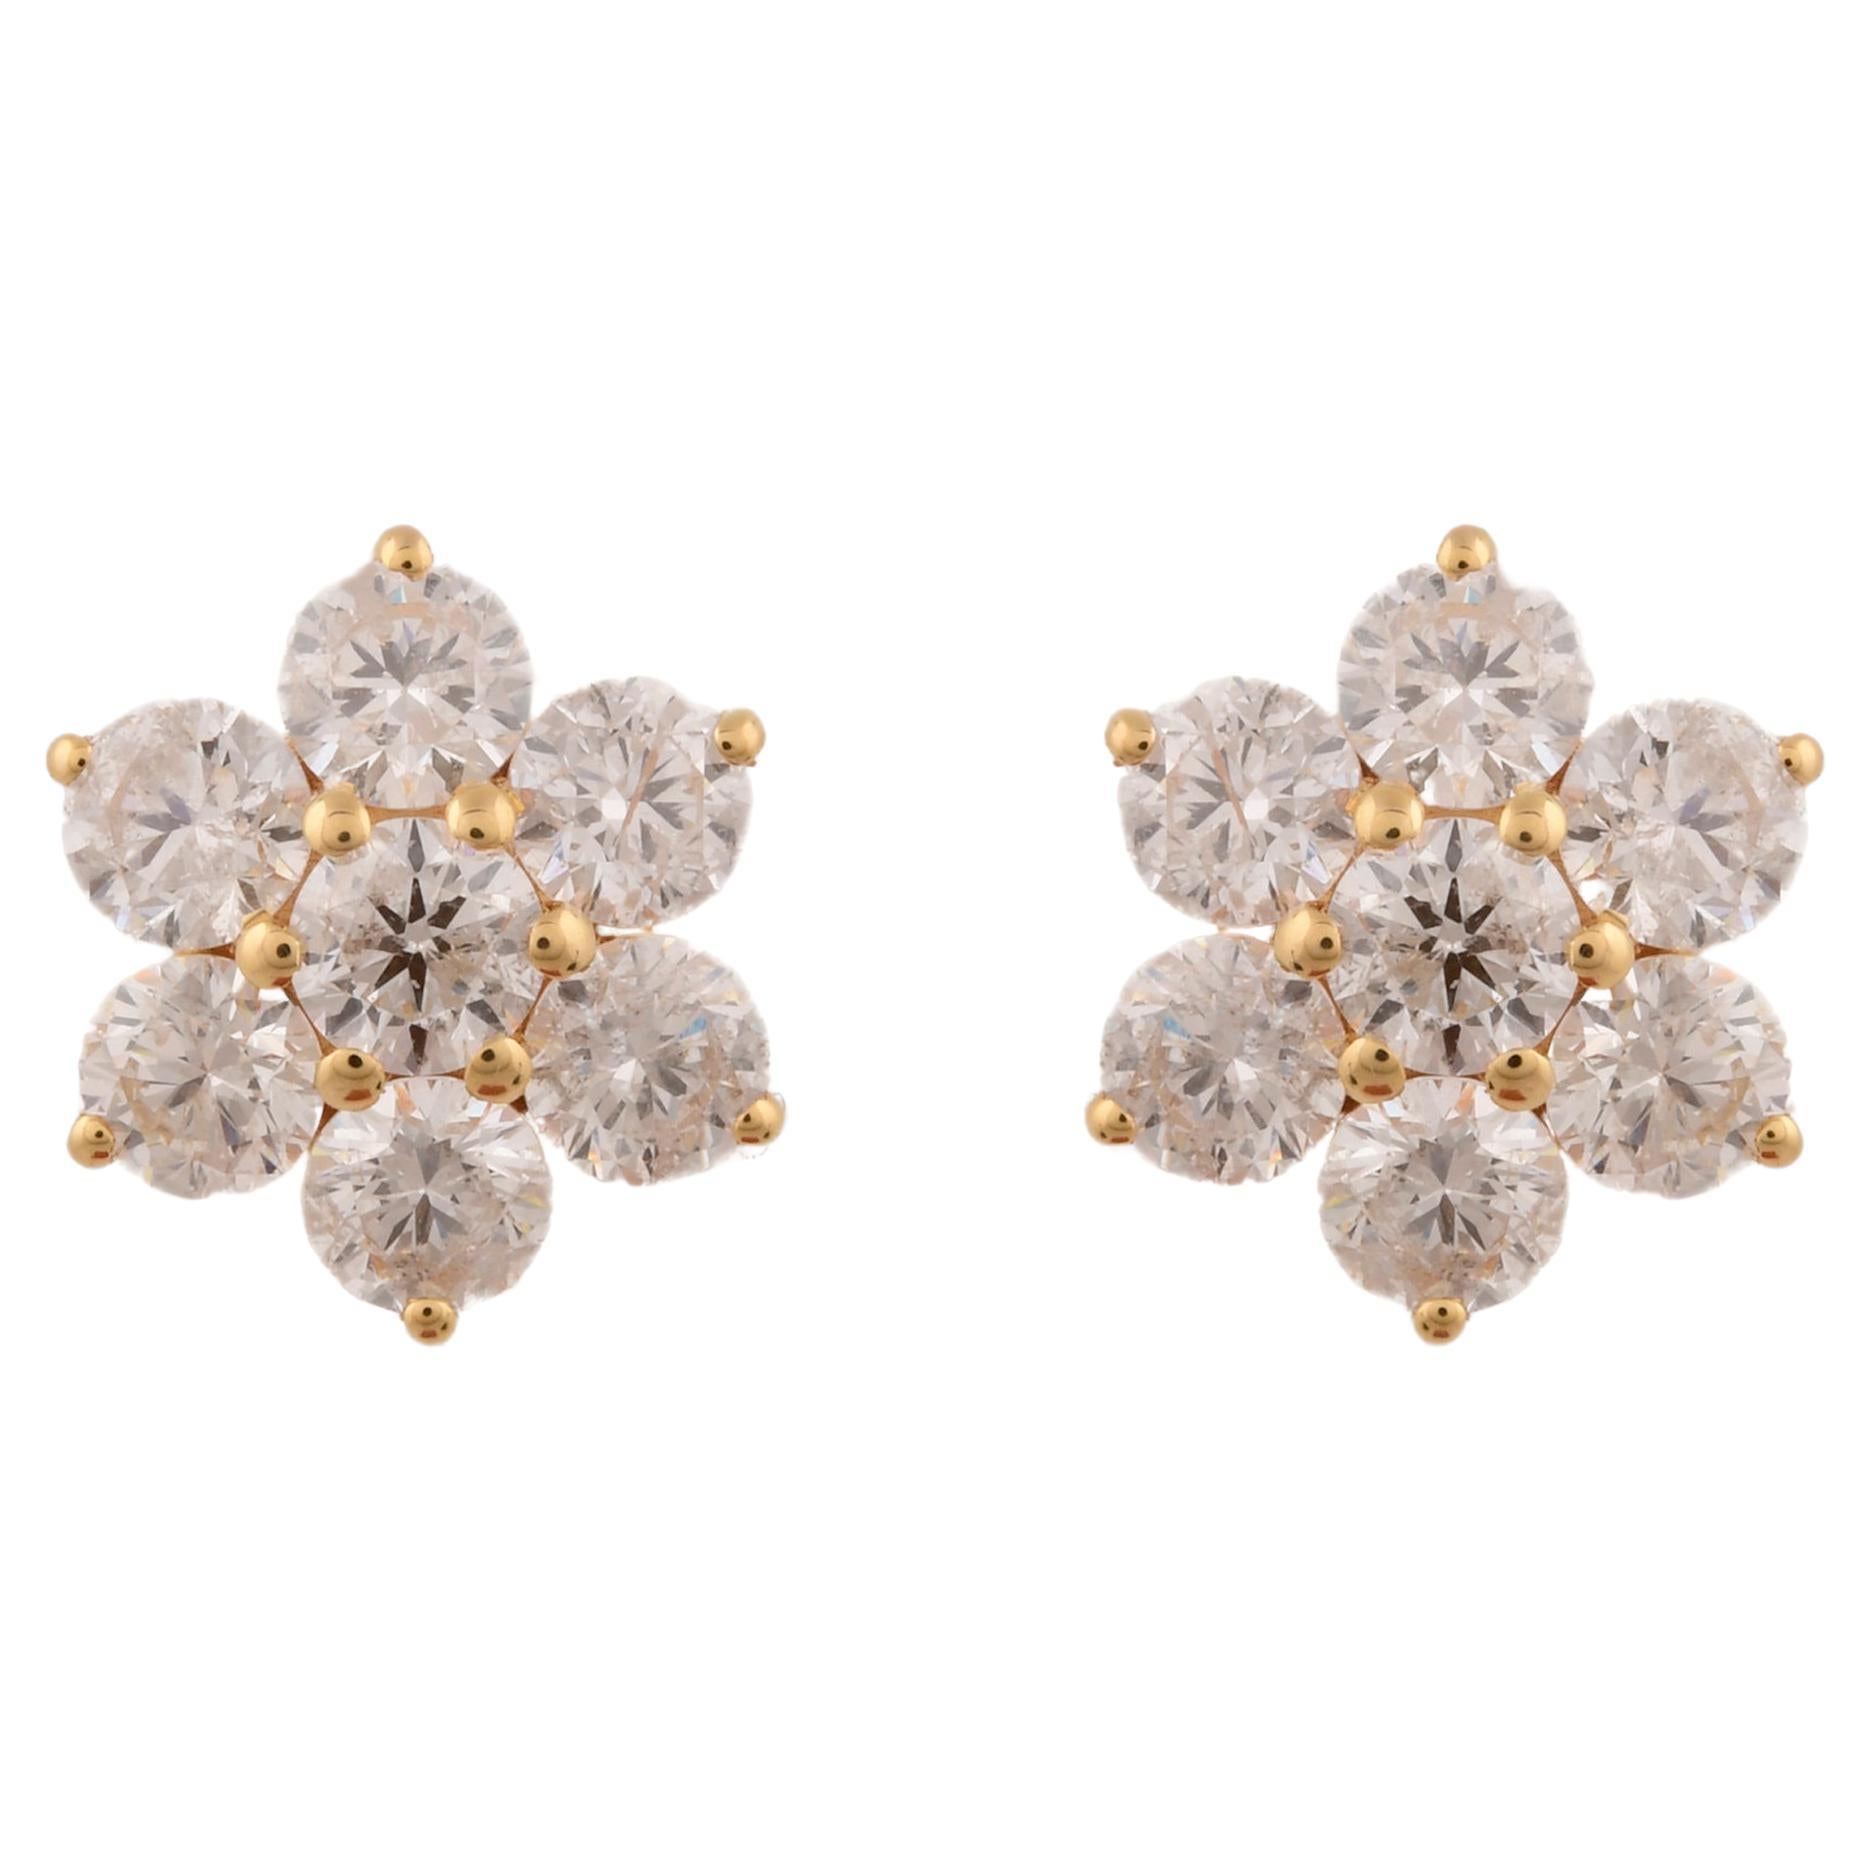 Clous d'oreilles fleur en or jaune 18 carats avec diamants de 2,90 carats de pureté SI de couleur hi-colore